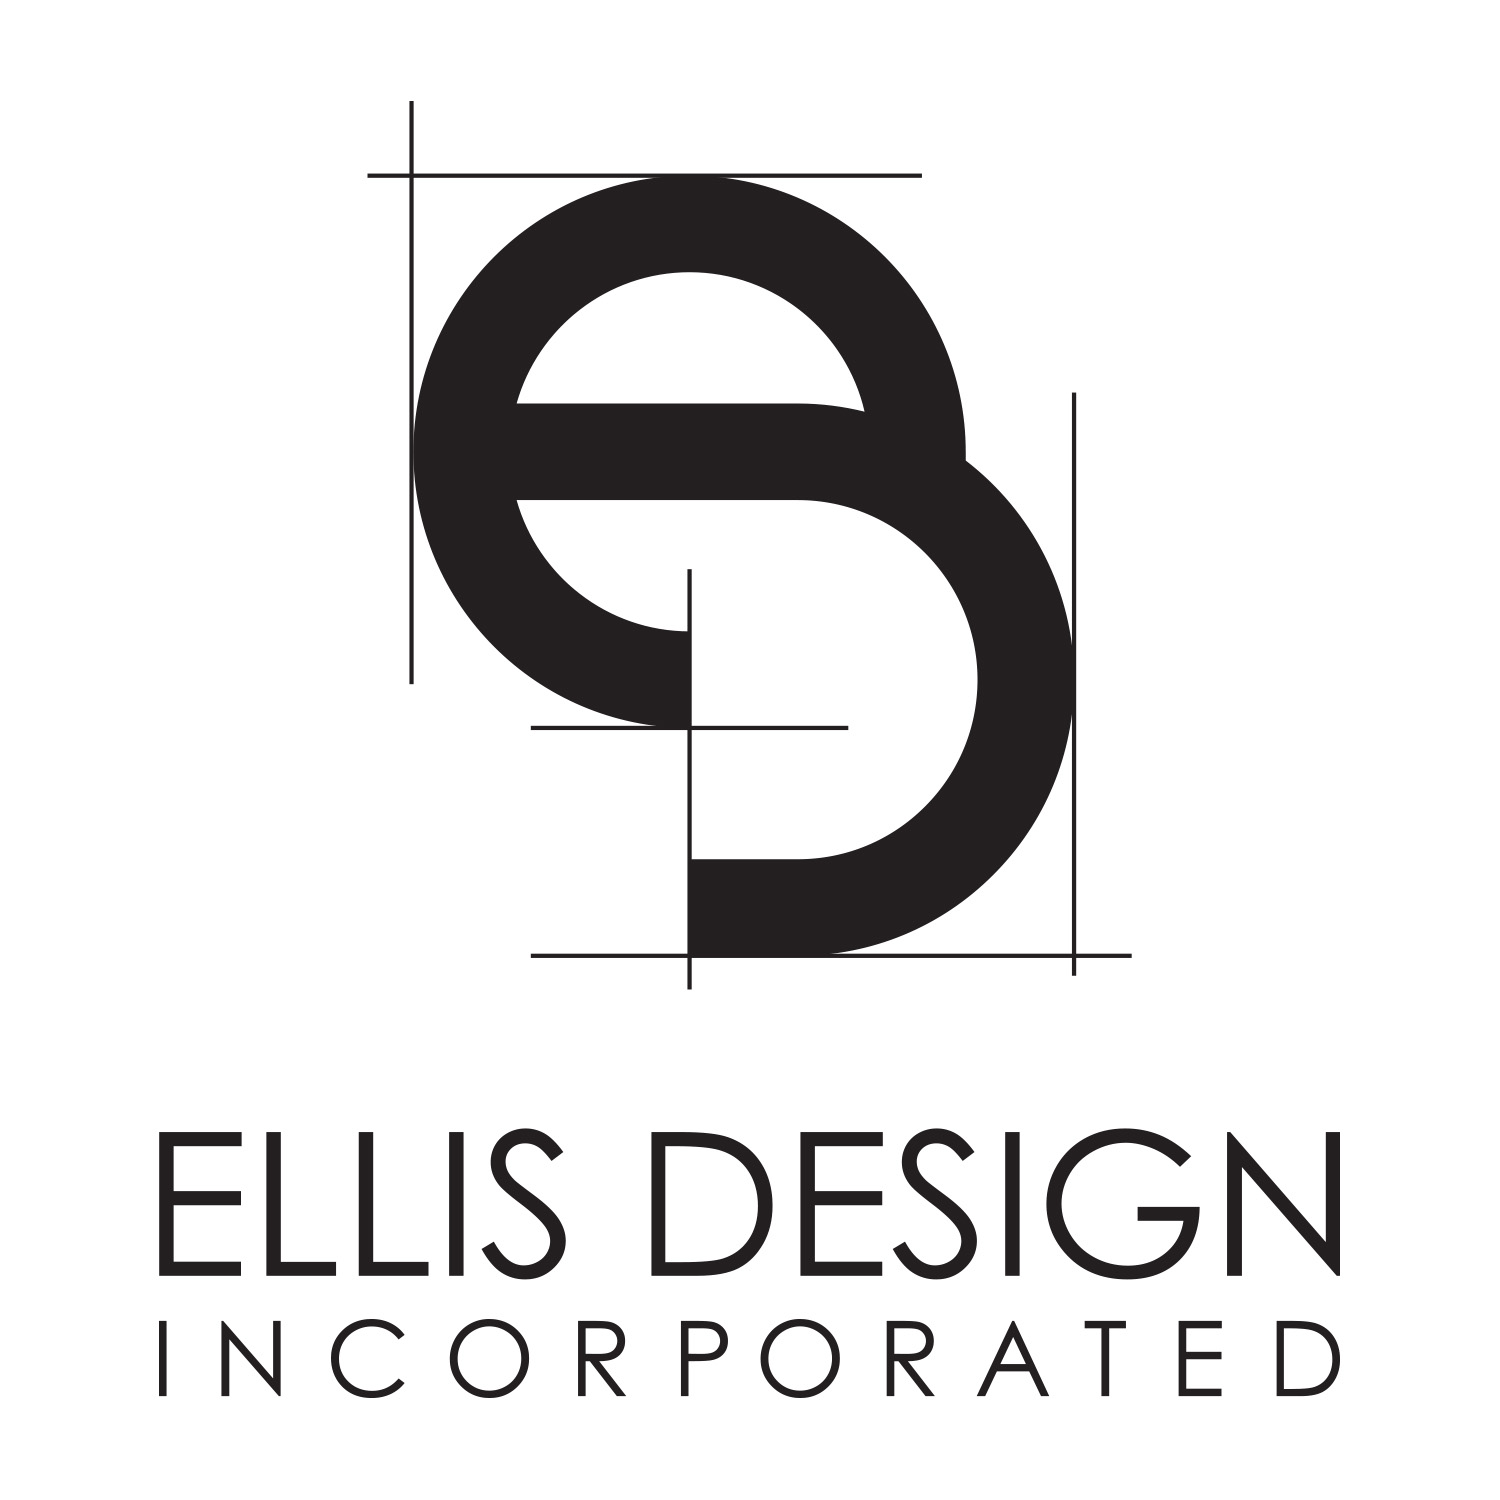 Ellis Design Incorporated